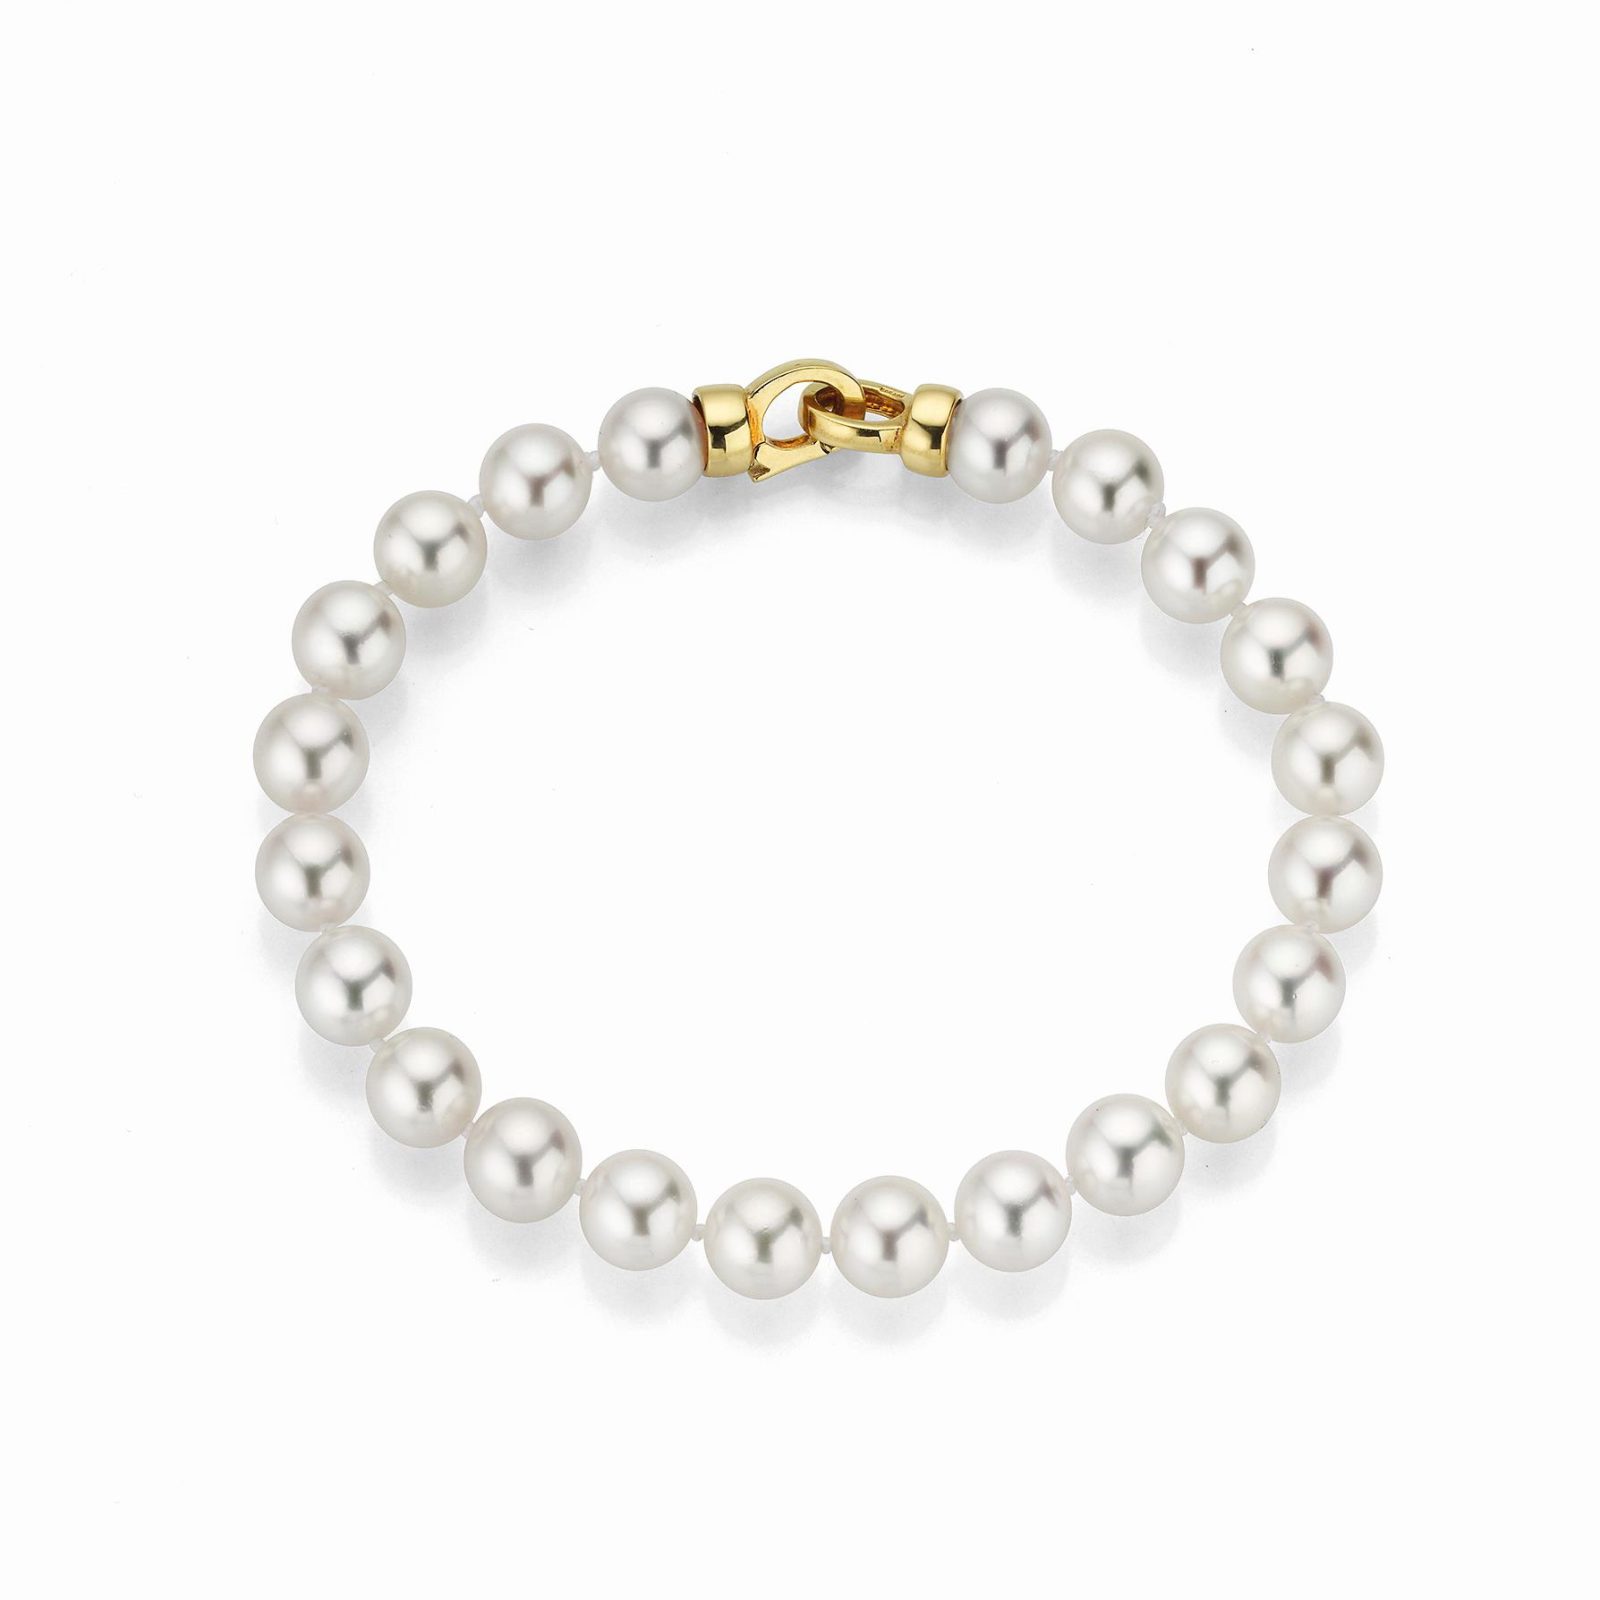 Kette für Hals oder Arm Perlen 18kt Gelbgold - Yana Nesper - AP155-7